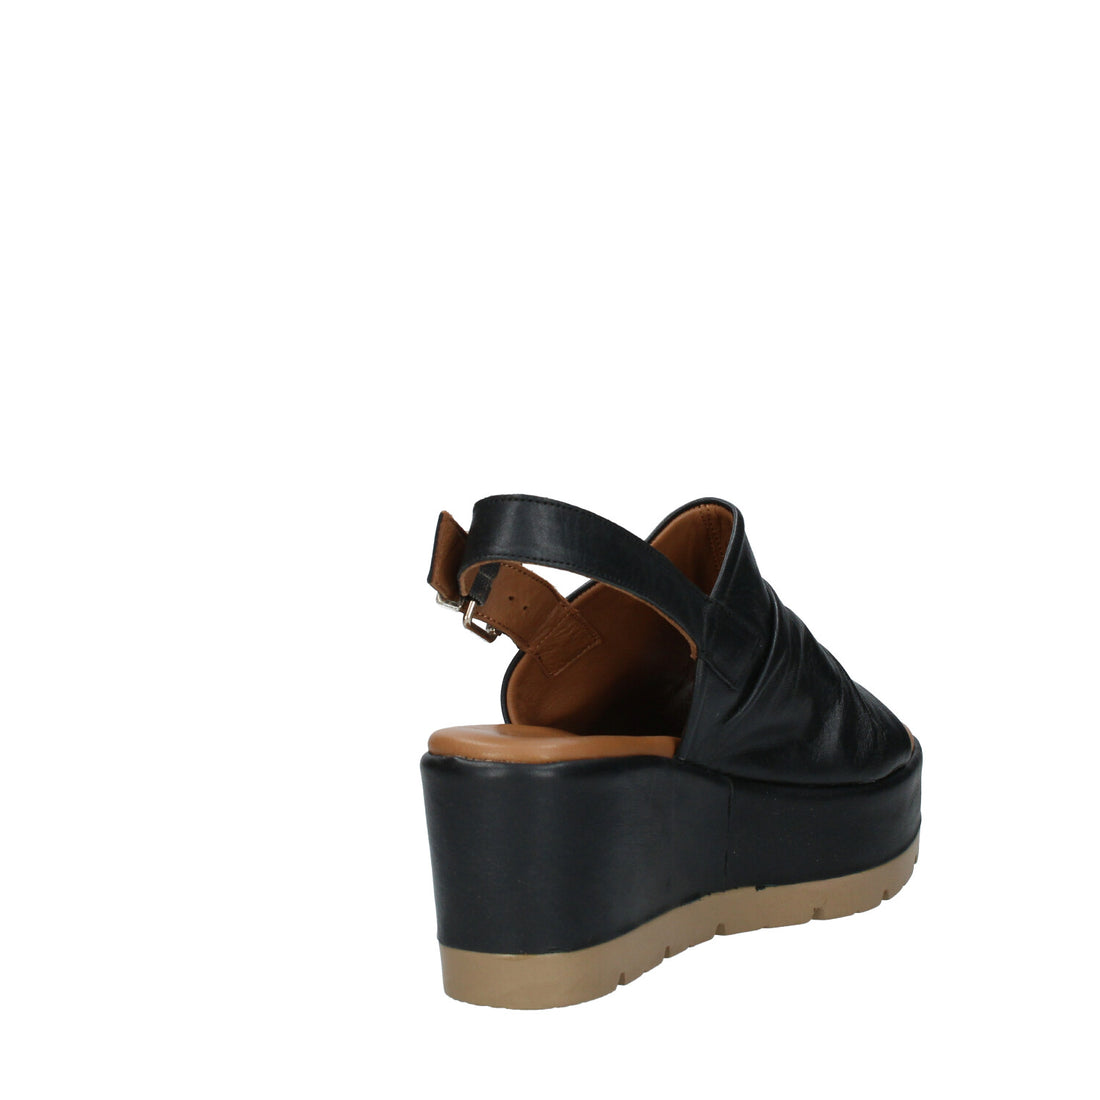 Sandalo con Zeppa Donna Lumberjack SWG8506-002